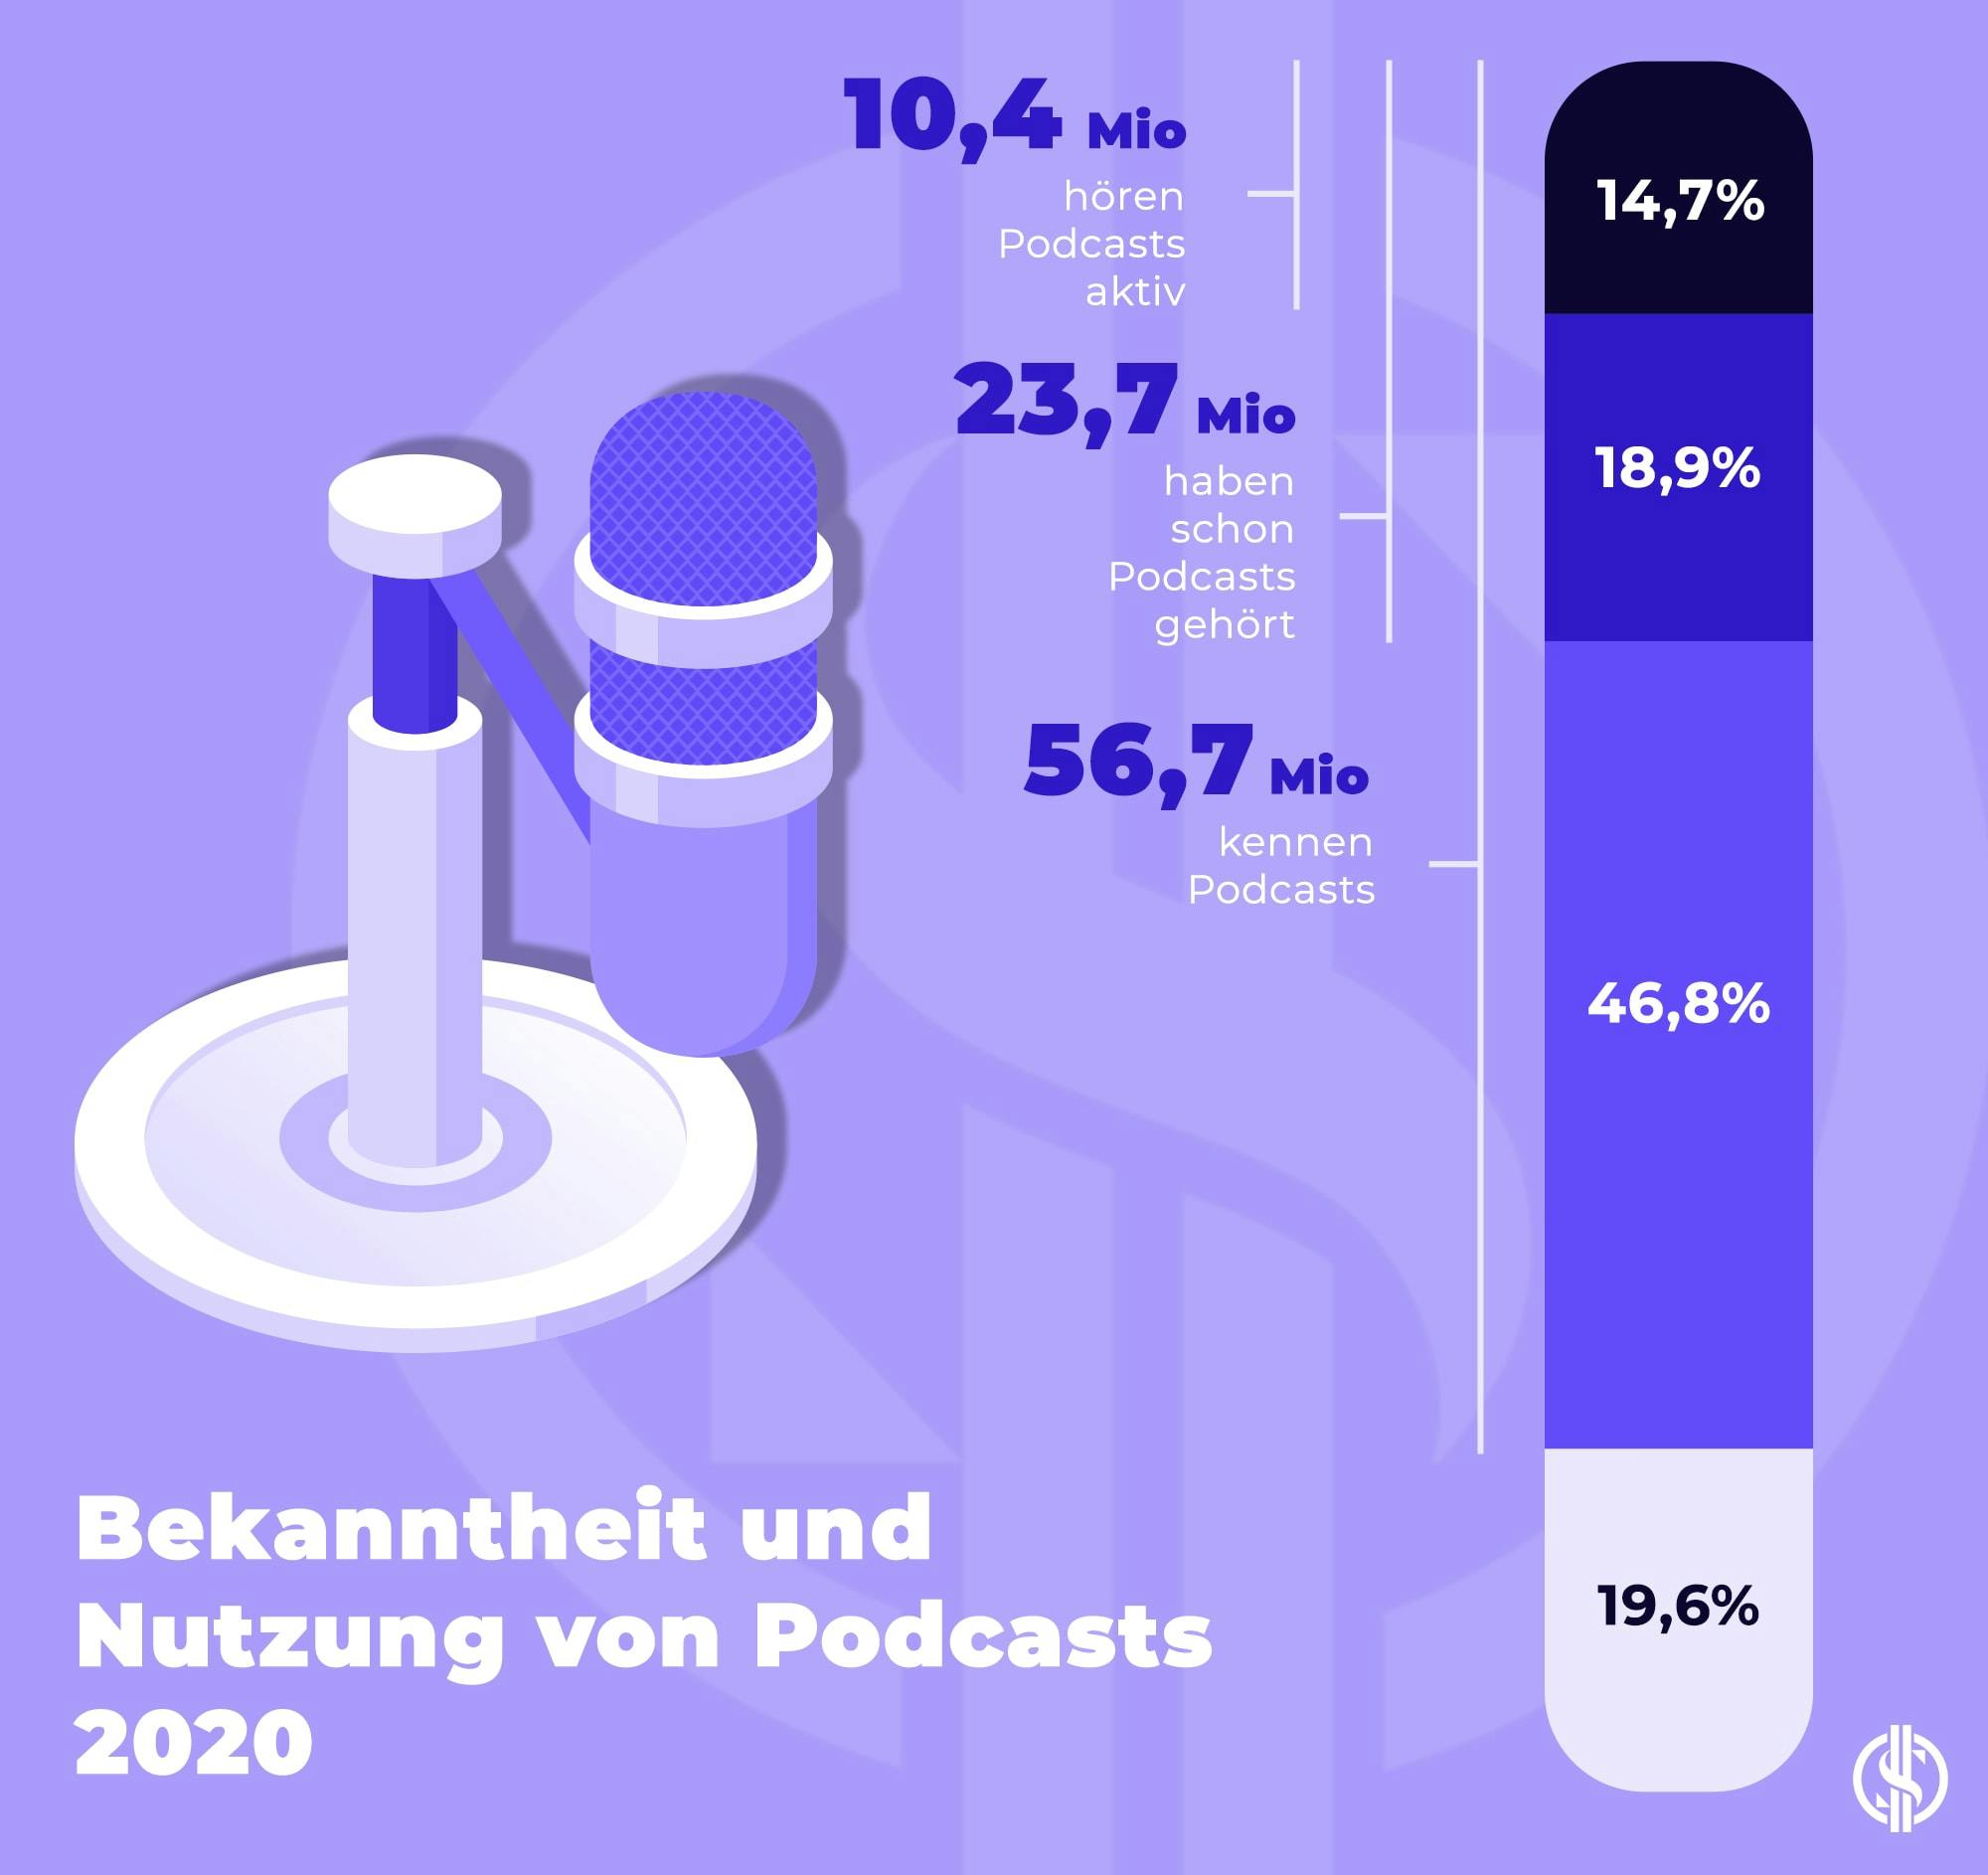 Bekanntheit und Nutzung von Podcasts 2020